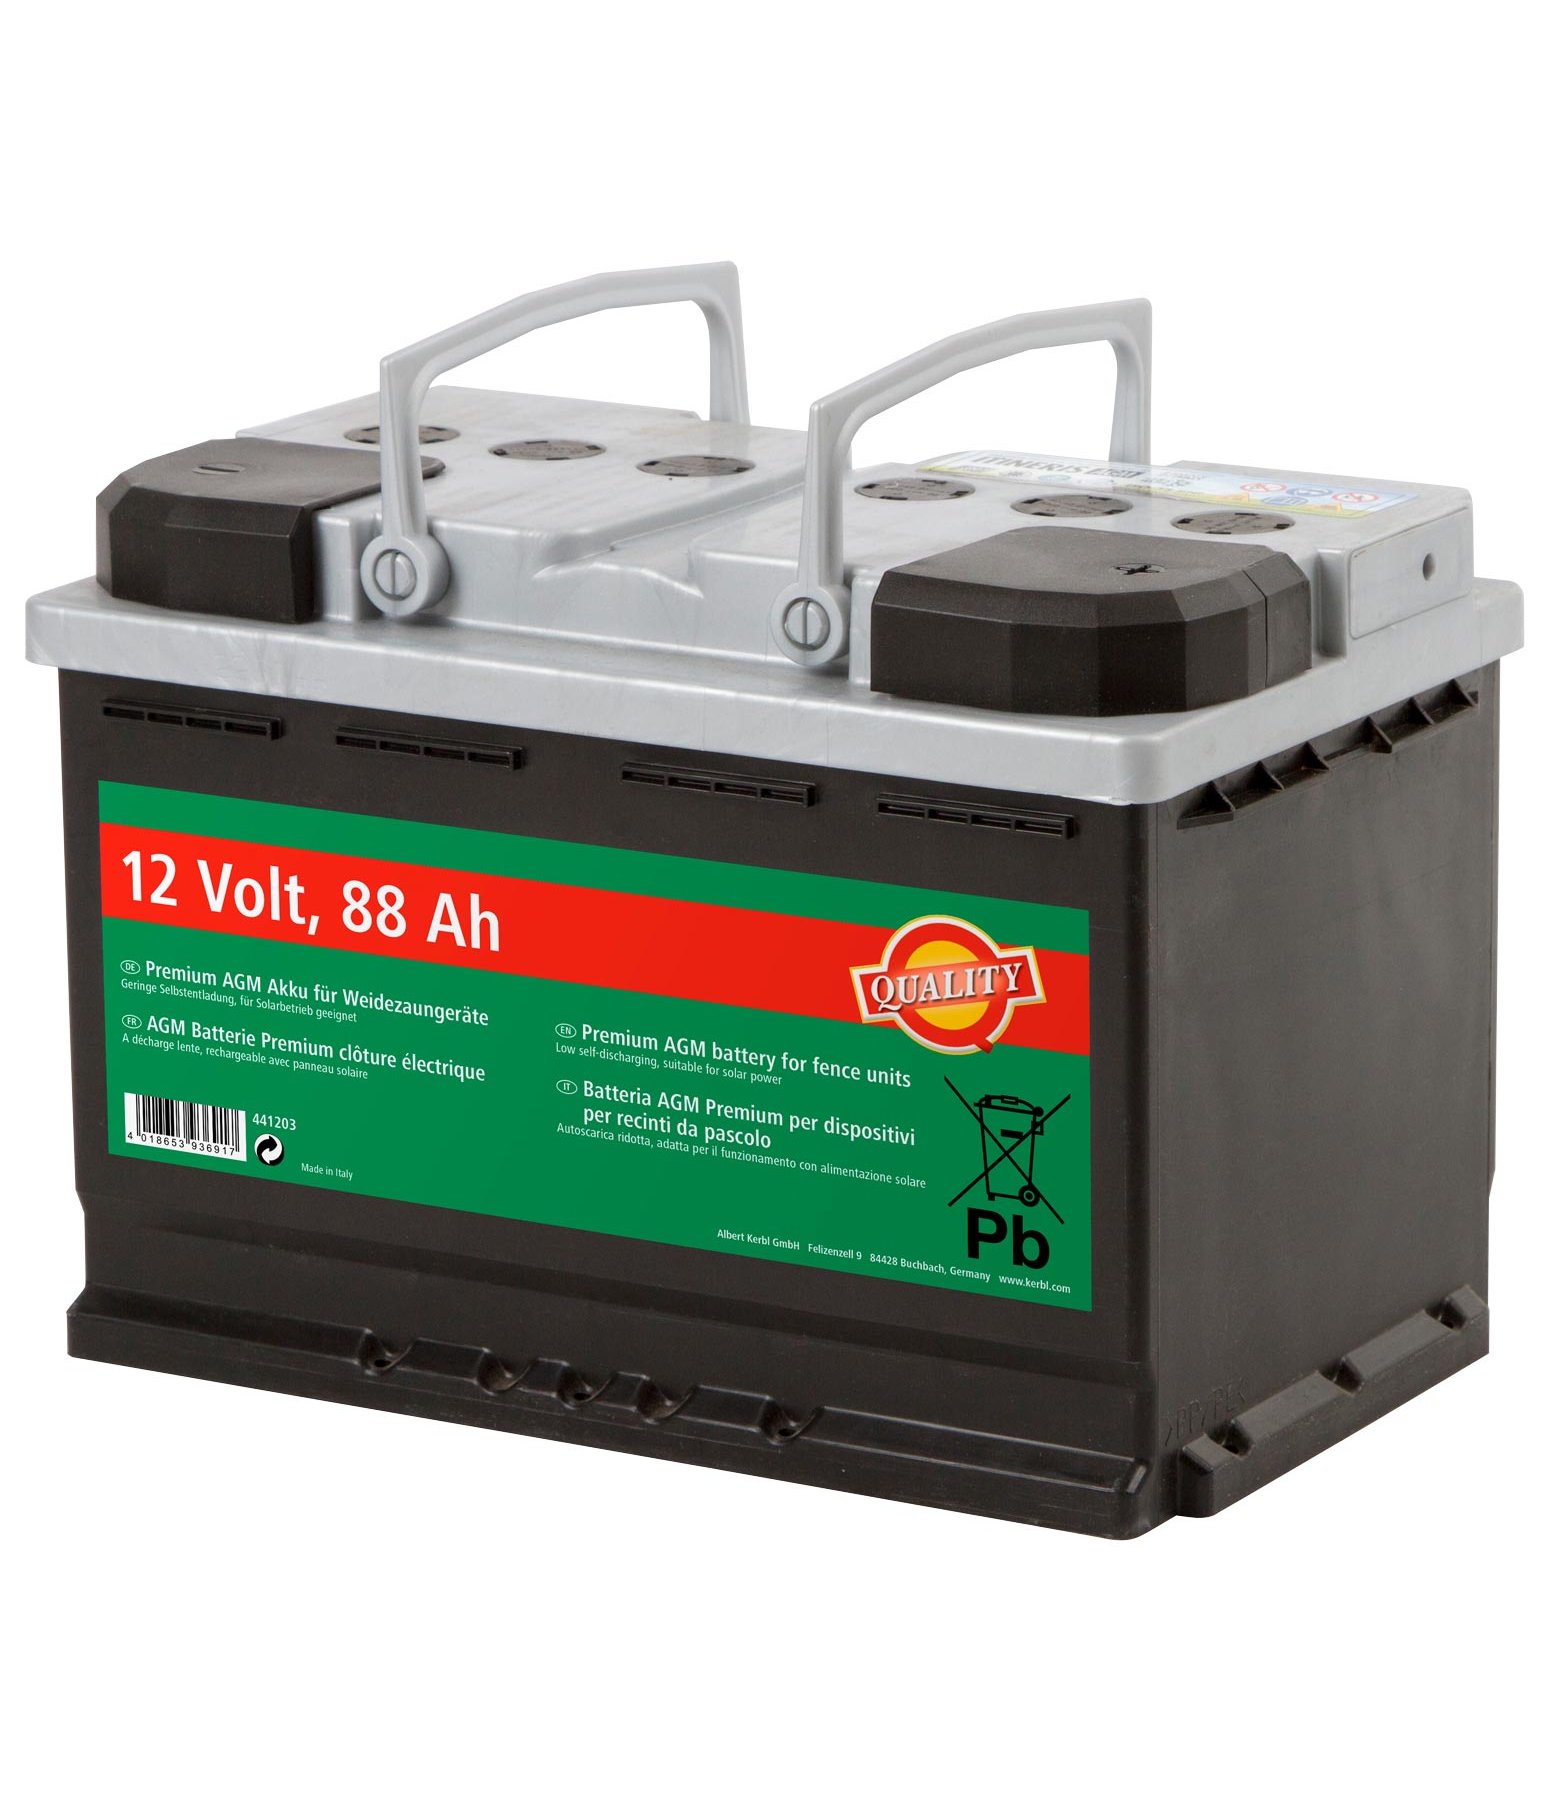 12 V Gel-Akku für 12 Volt Batteriegeräte - Krämer Pferdesport